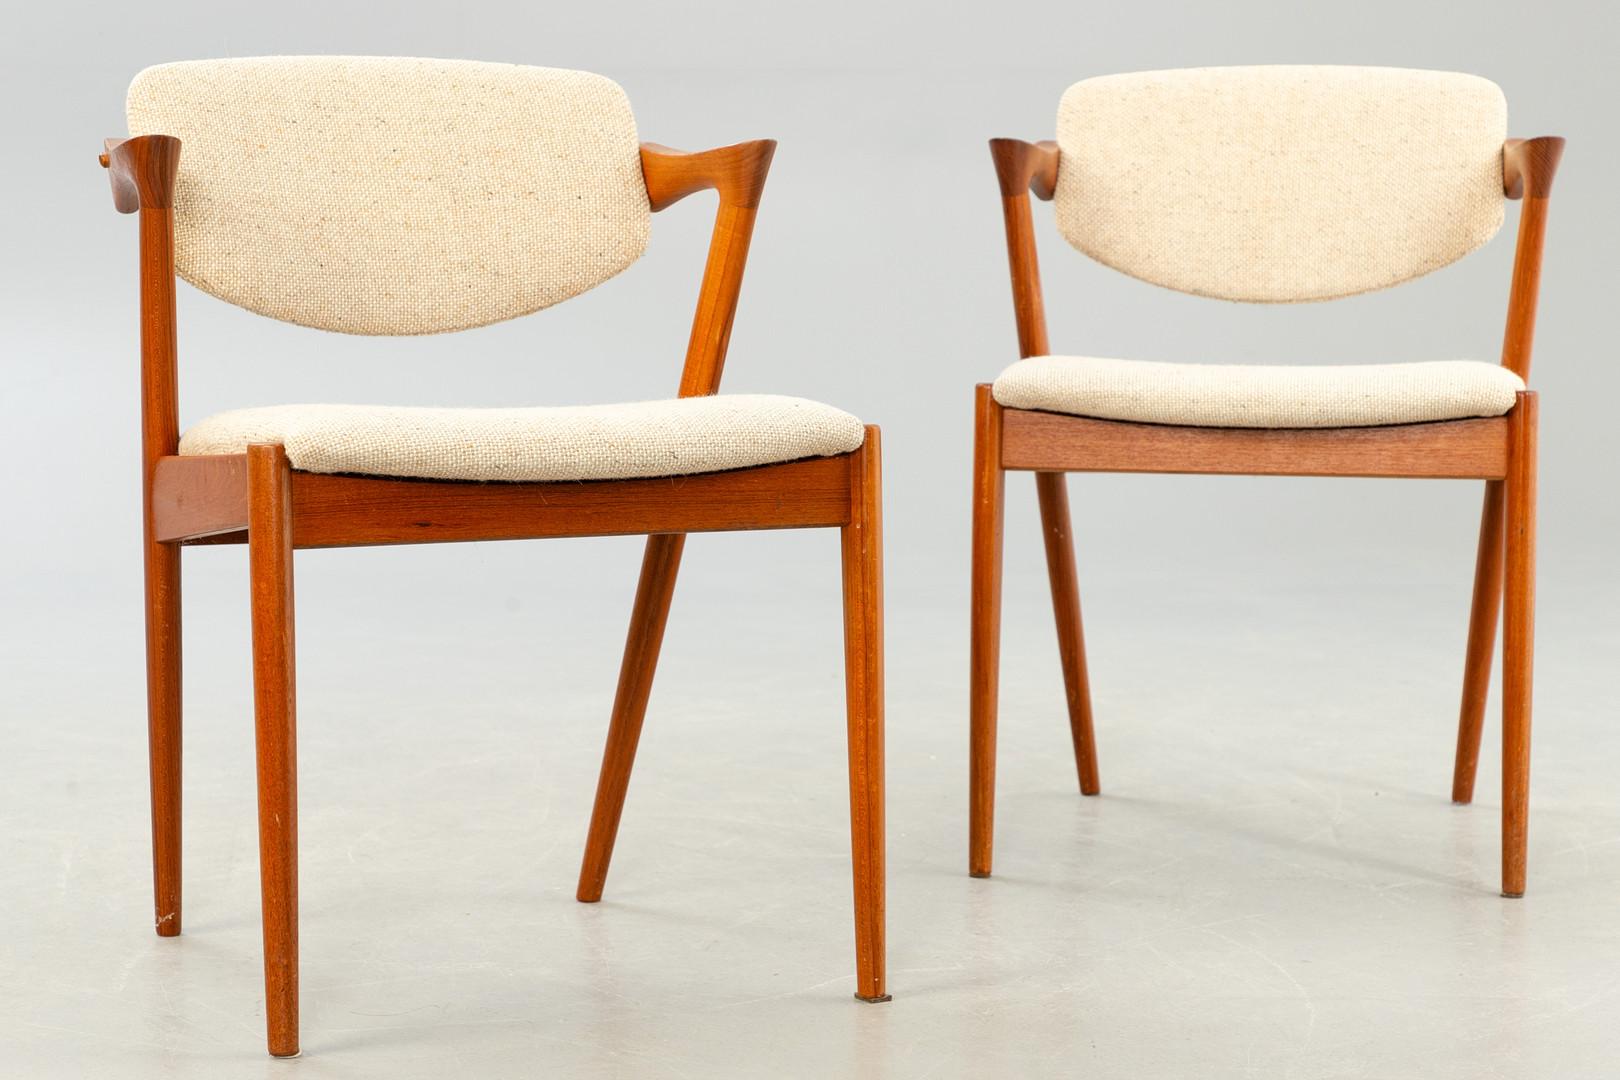 Esszimmerstühle, Modell 42, entworfen von Kai Kristiansen und hergestellt in Dänemark von Schou Andersen Møbelfabrik. Die Stühle sind aus massivem Teakholz gefertigt, haben konisch zulaufende Beine, geschwungene Armlehnen und sind mit Wolle